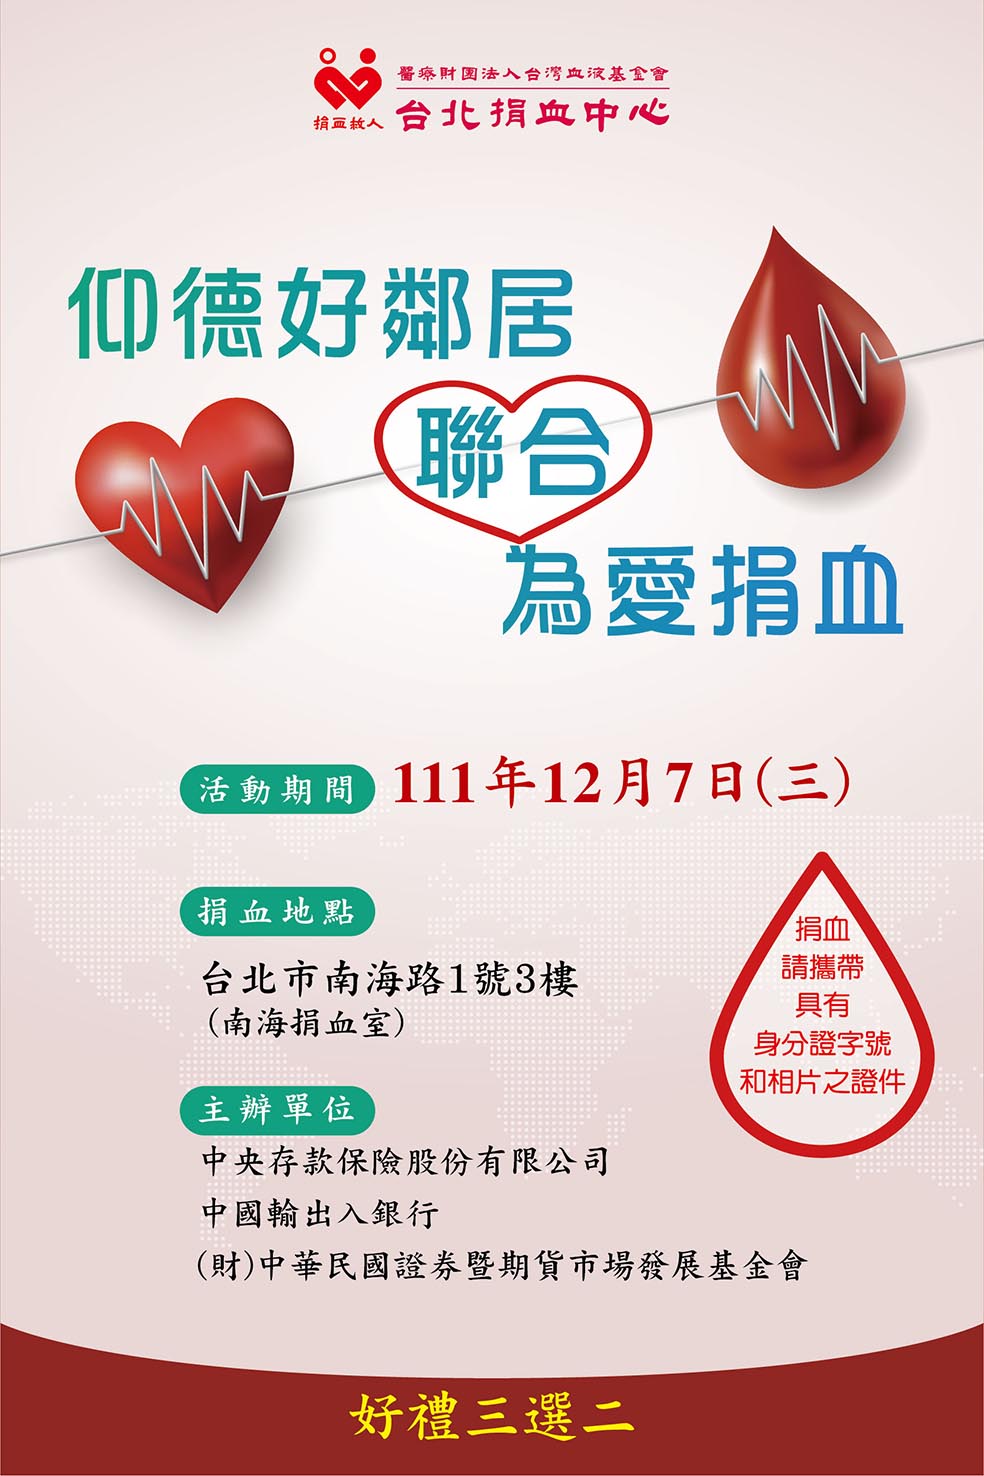 捐血活動海報，圖上另有文字說明